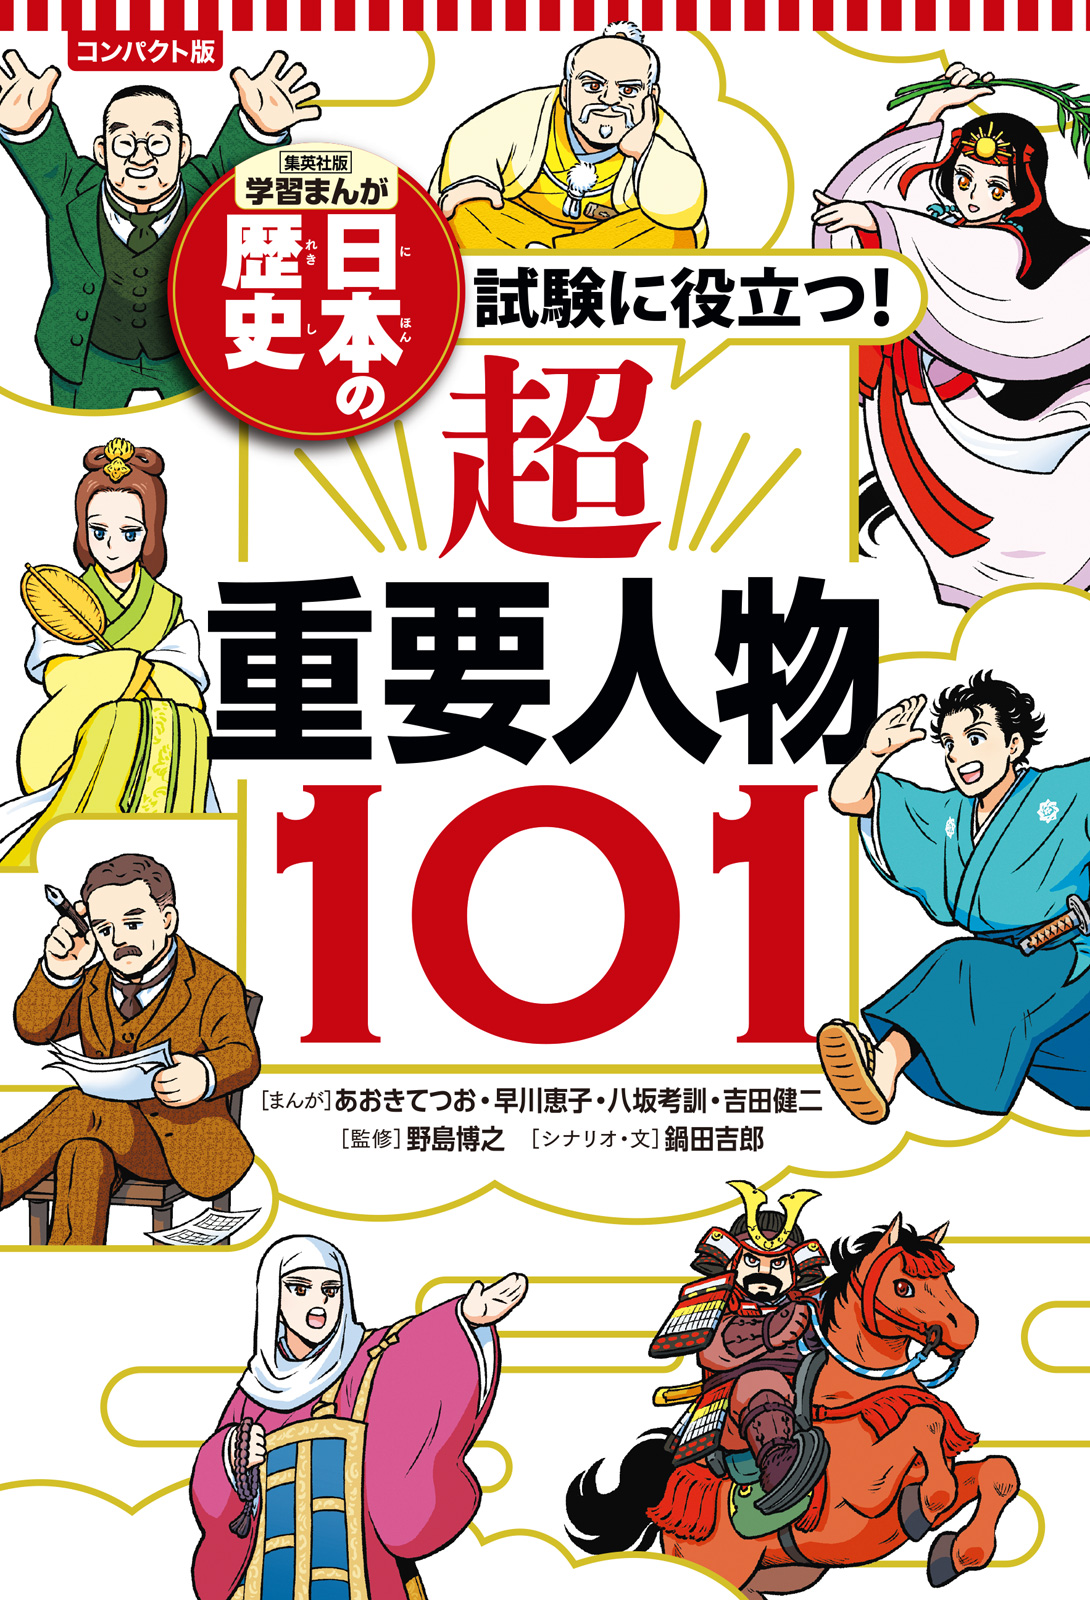 学習まんが日本の歴史全20巻+試験に役立つ! 超重要テーマ11 全巻学習漫画